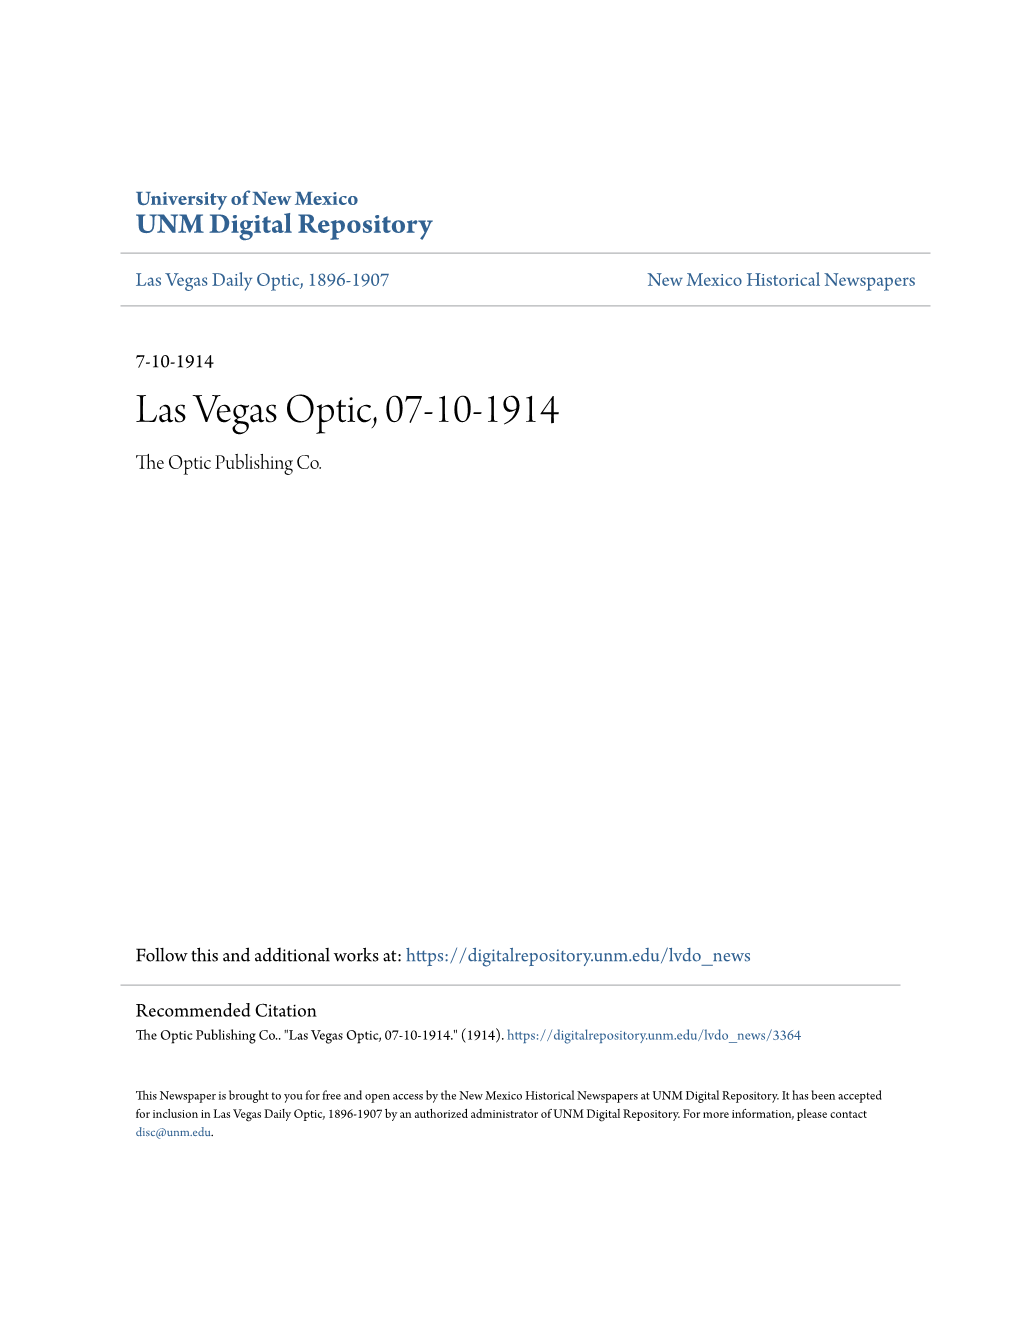 Las Vegas Optic, 07-10-1914 the Optic Publishing Co